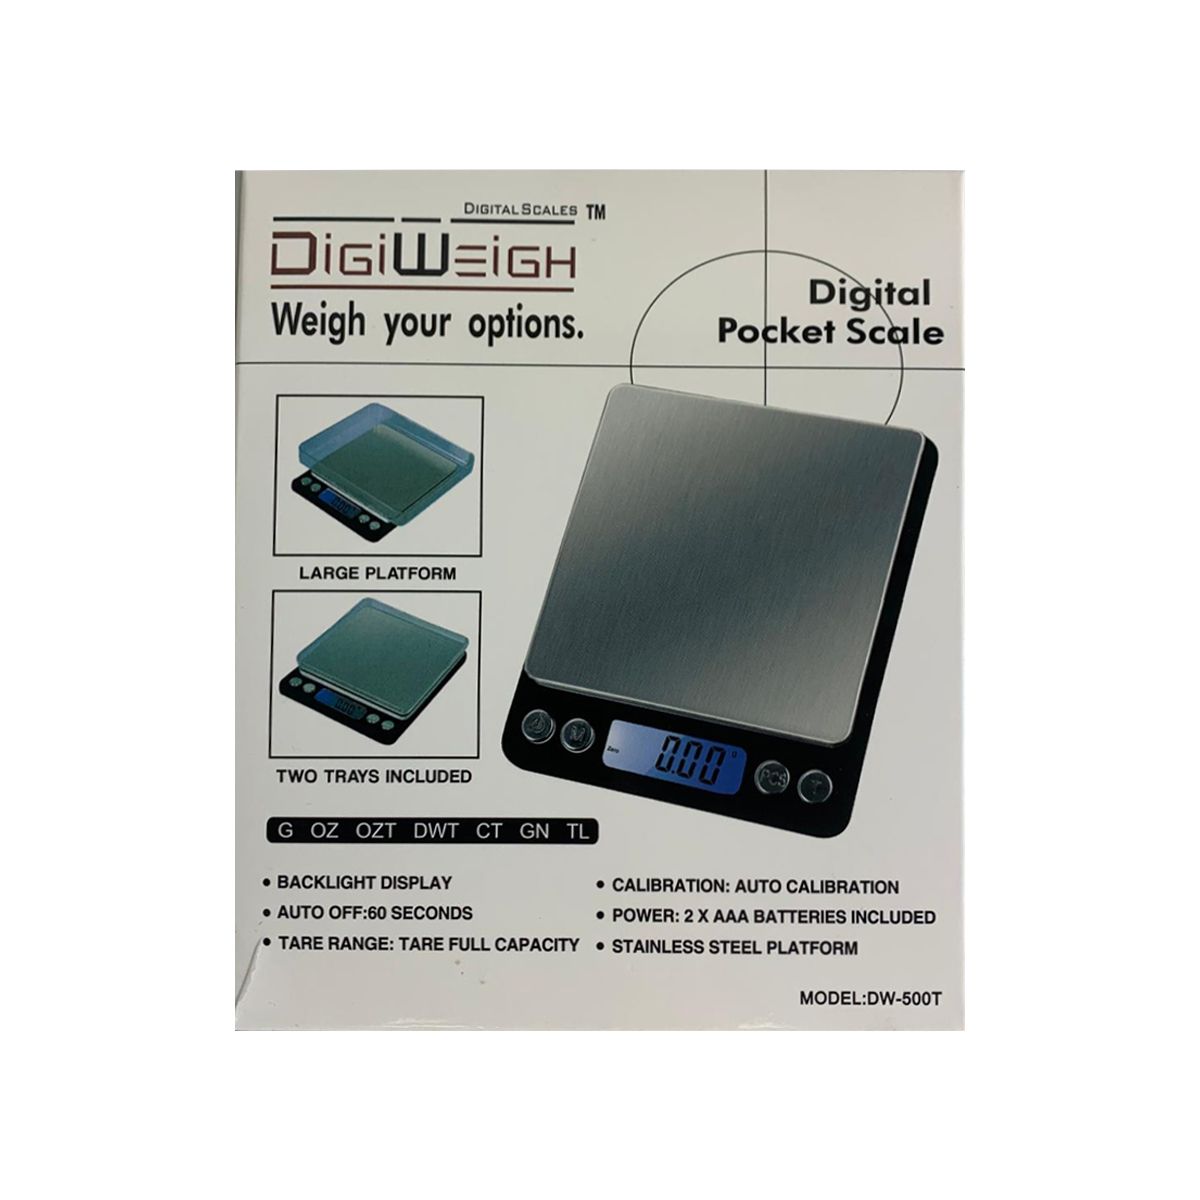 (6 unidades) Báscula digital DigiWeigh DW-500T $7,5 c/u